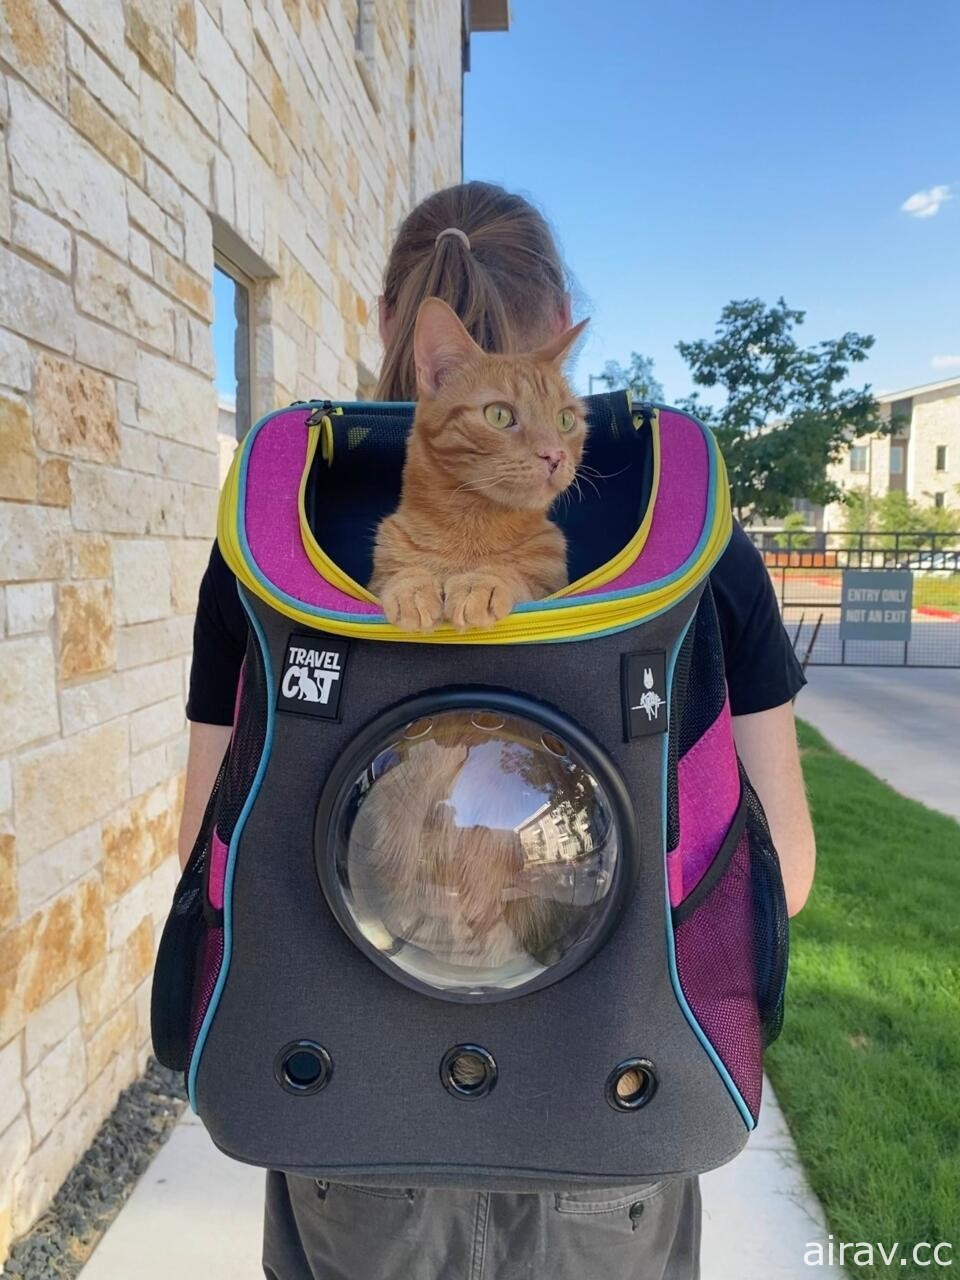 《浪貓》宣布跨界合作 推出聯名限量版貓咪旅行背包與胸背帶